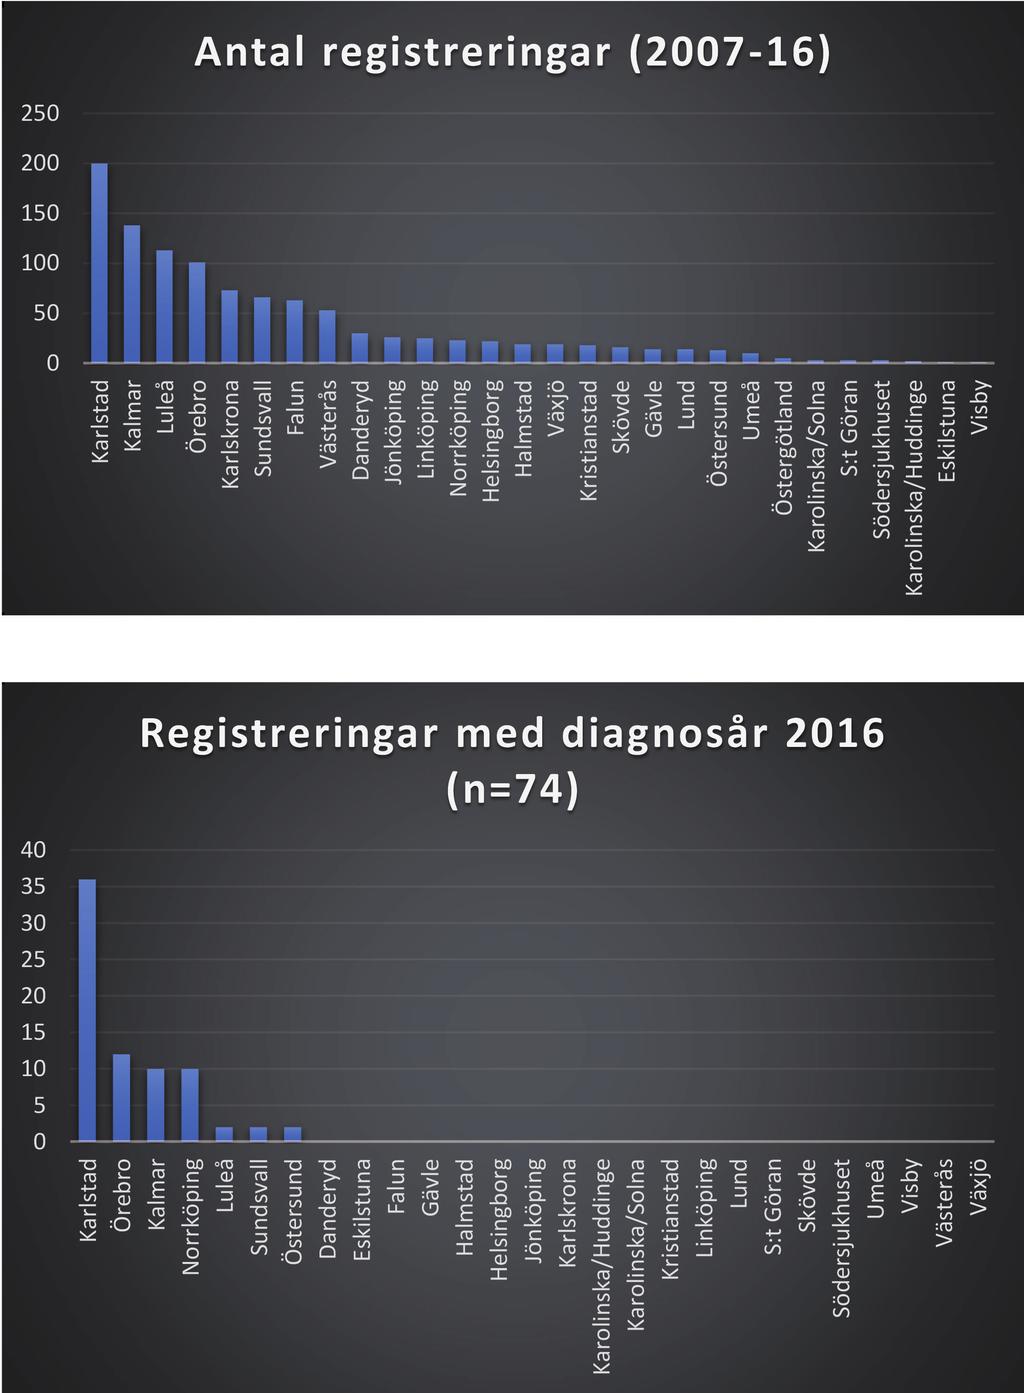 Fig. 2. Registreringar klinikvis sedan registerstart. Fig. 3. Registreringar klinikvis 2016. Tyvärr ser vi fortfarande att enbart 47% av påbörjade inmatningar är avslutade (fig. 4).